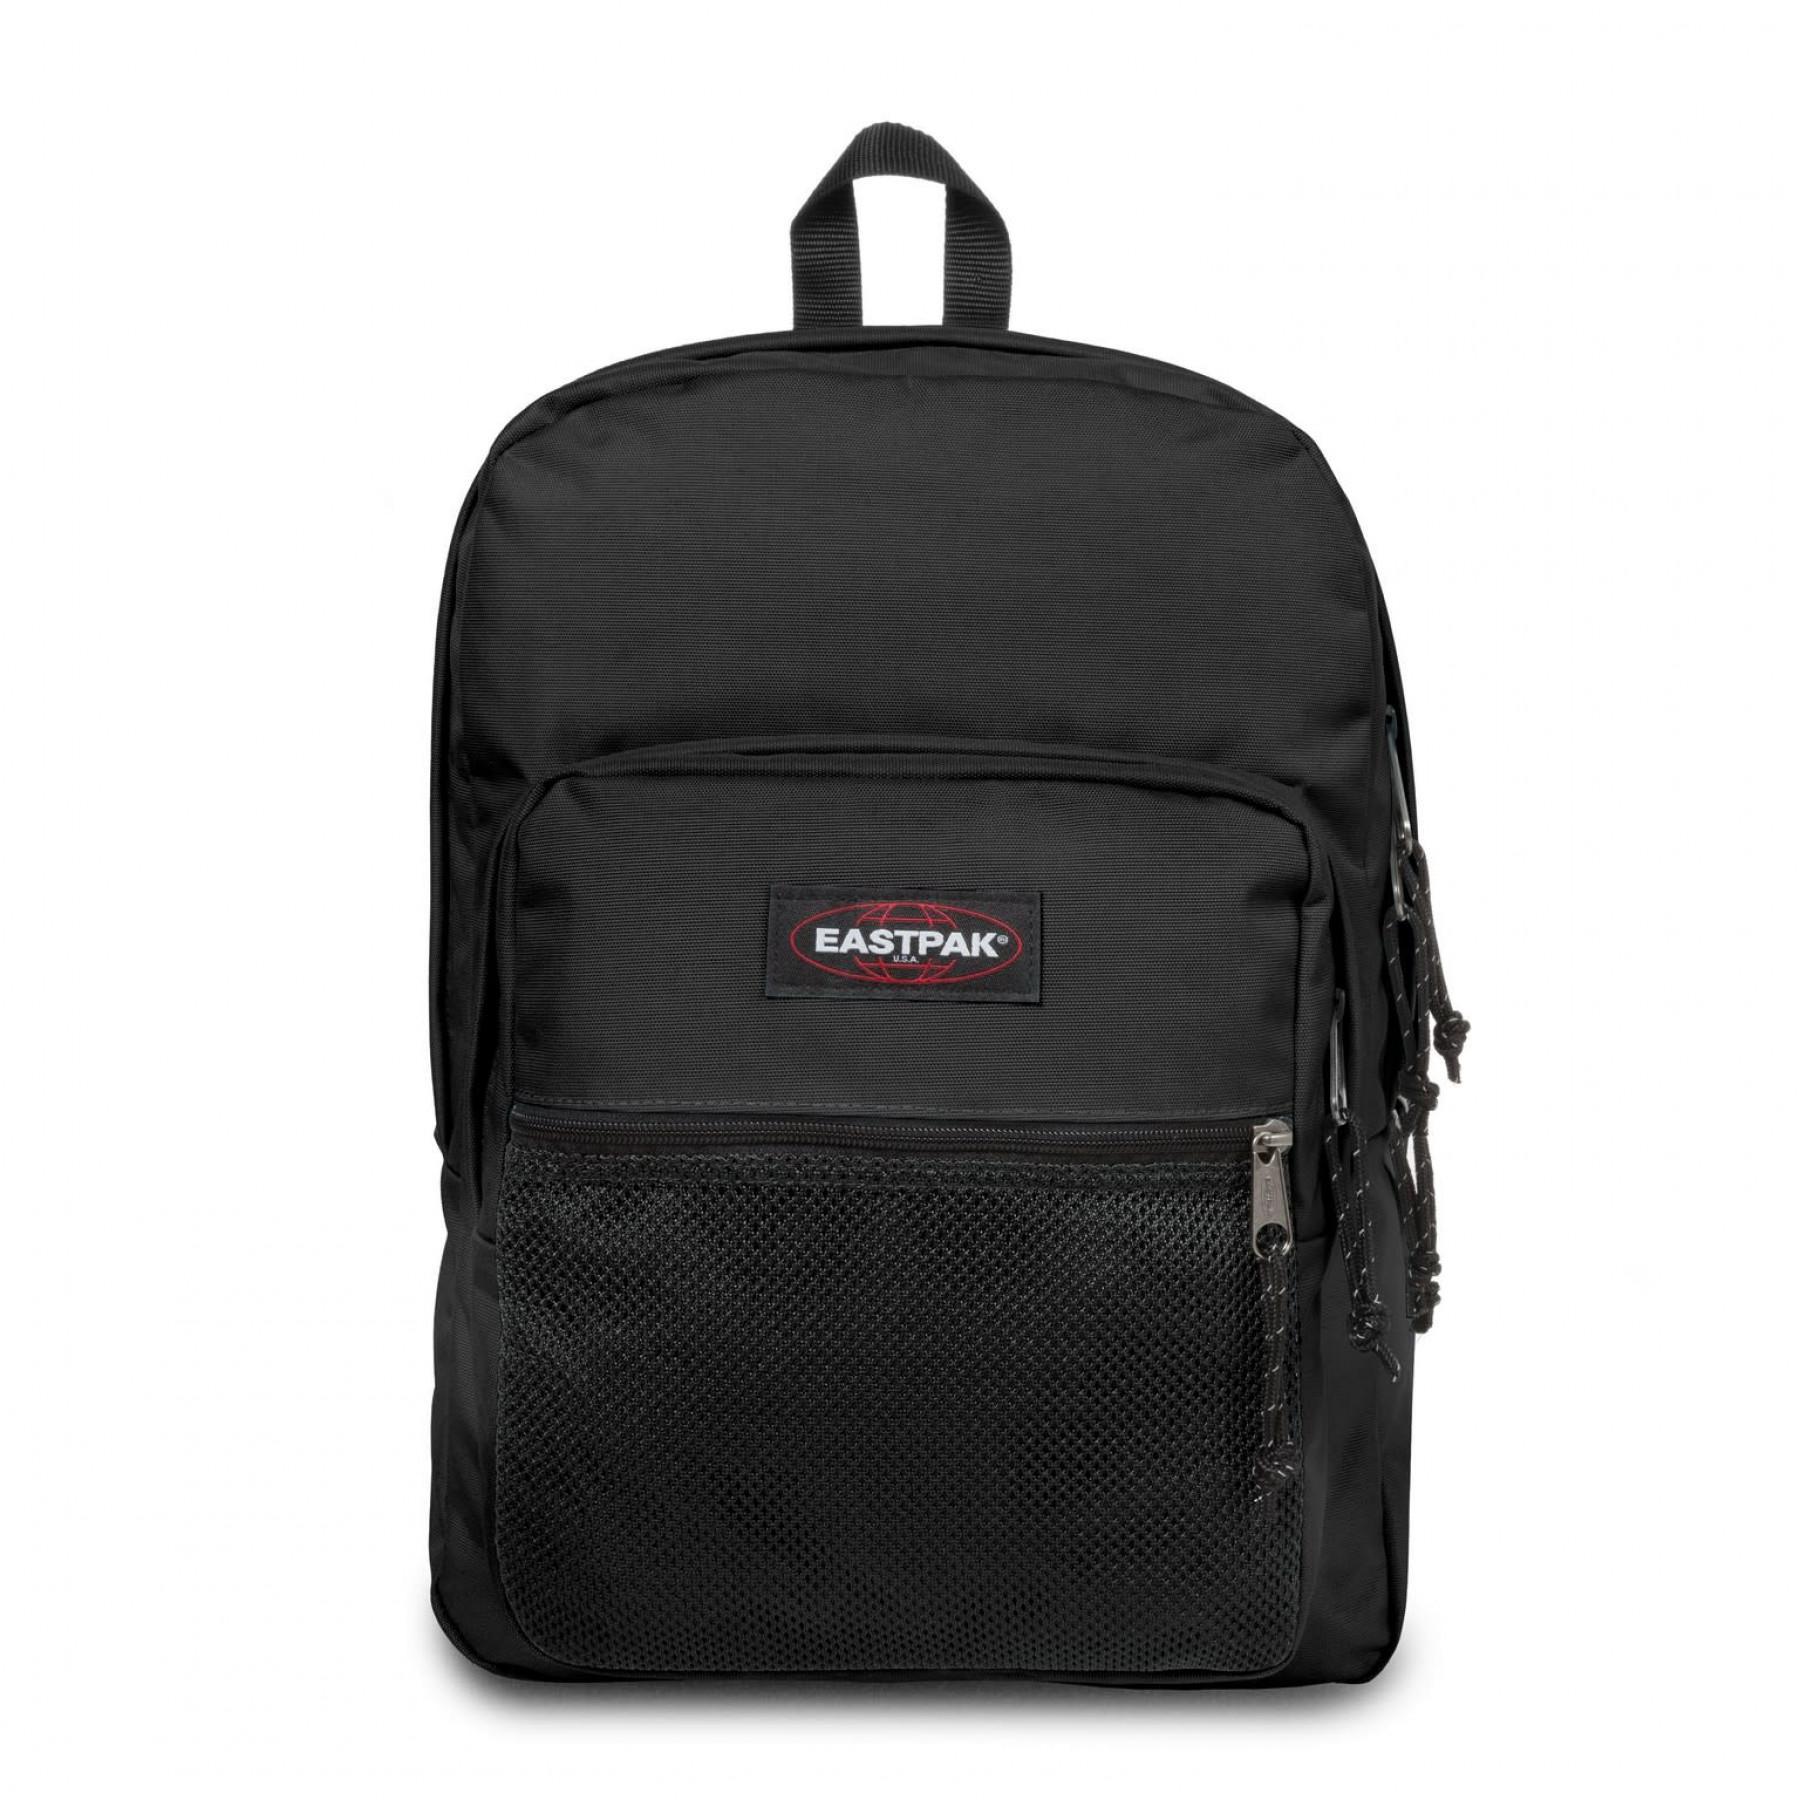 Backpack Eastpak Pinnacle Black